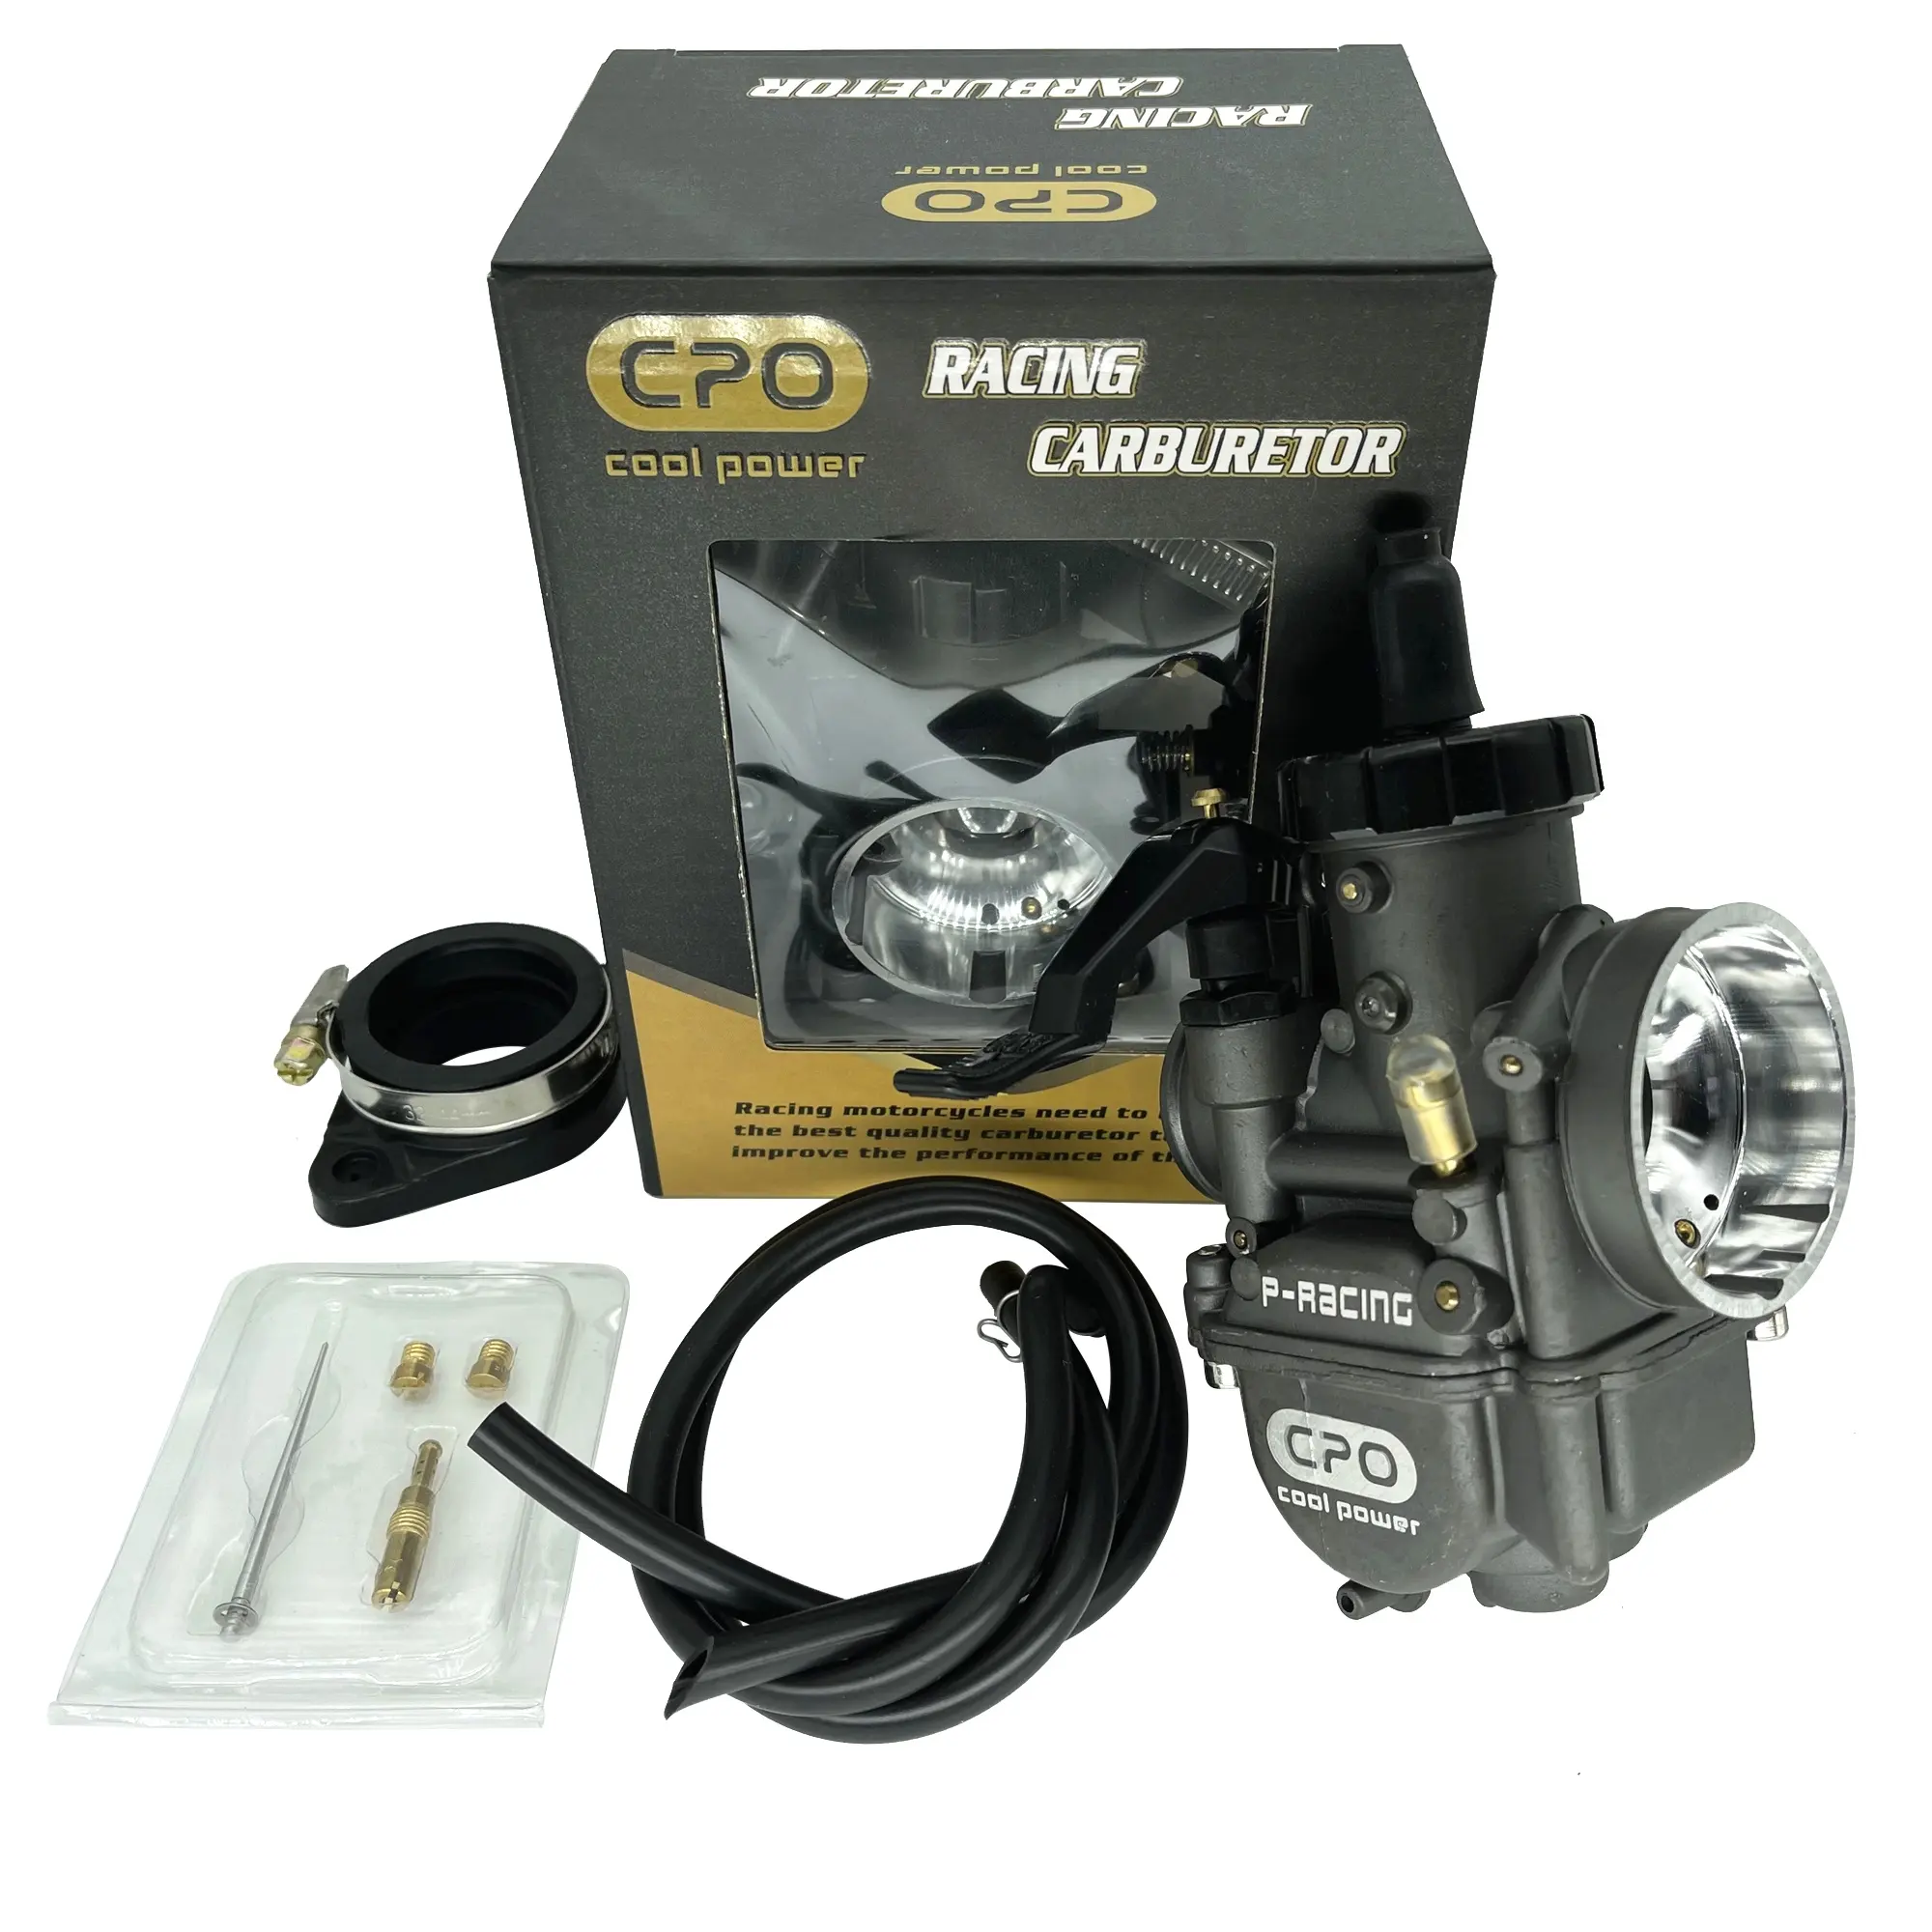 CPOレーシングキャブレターオートバイPE26レーシング用ATVゴーカートモーターサイクルパーツモーターサイクルエンジンシステム